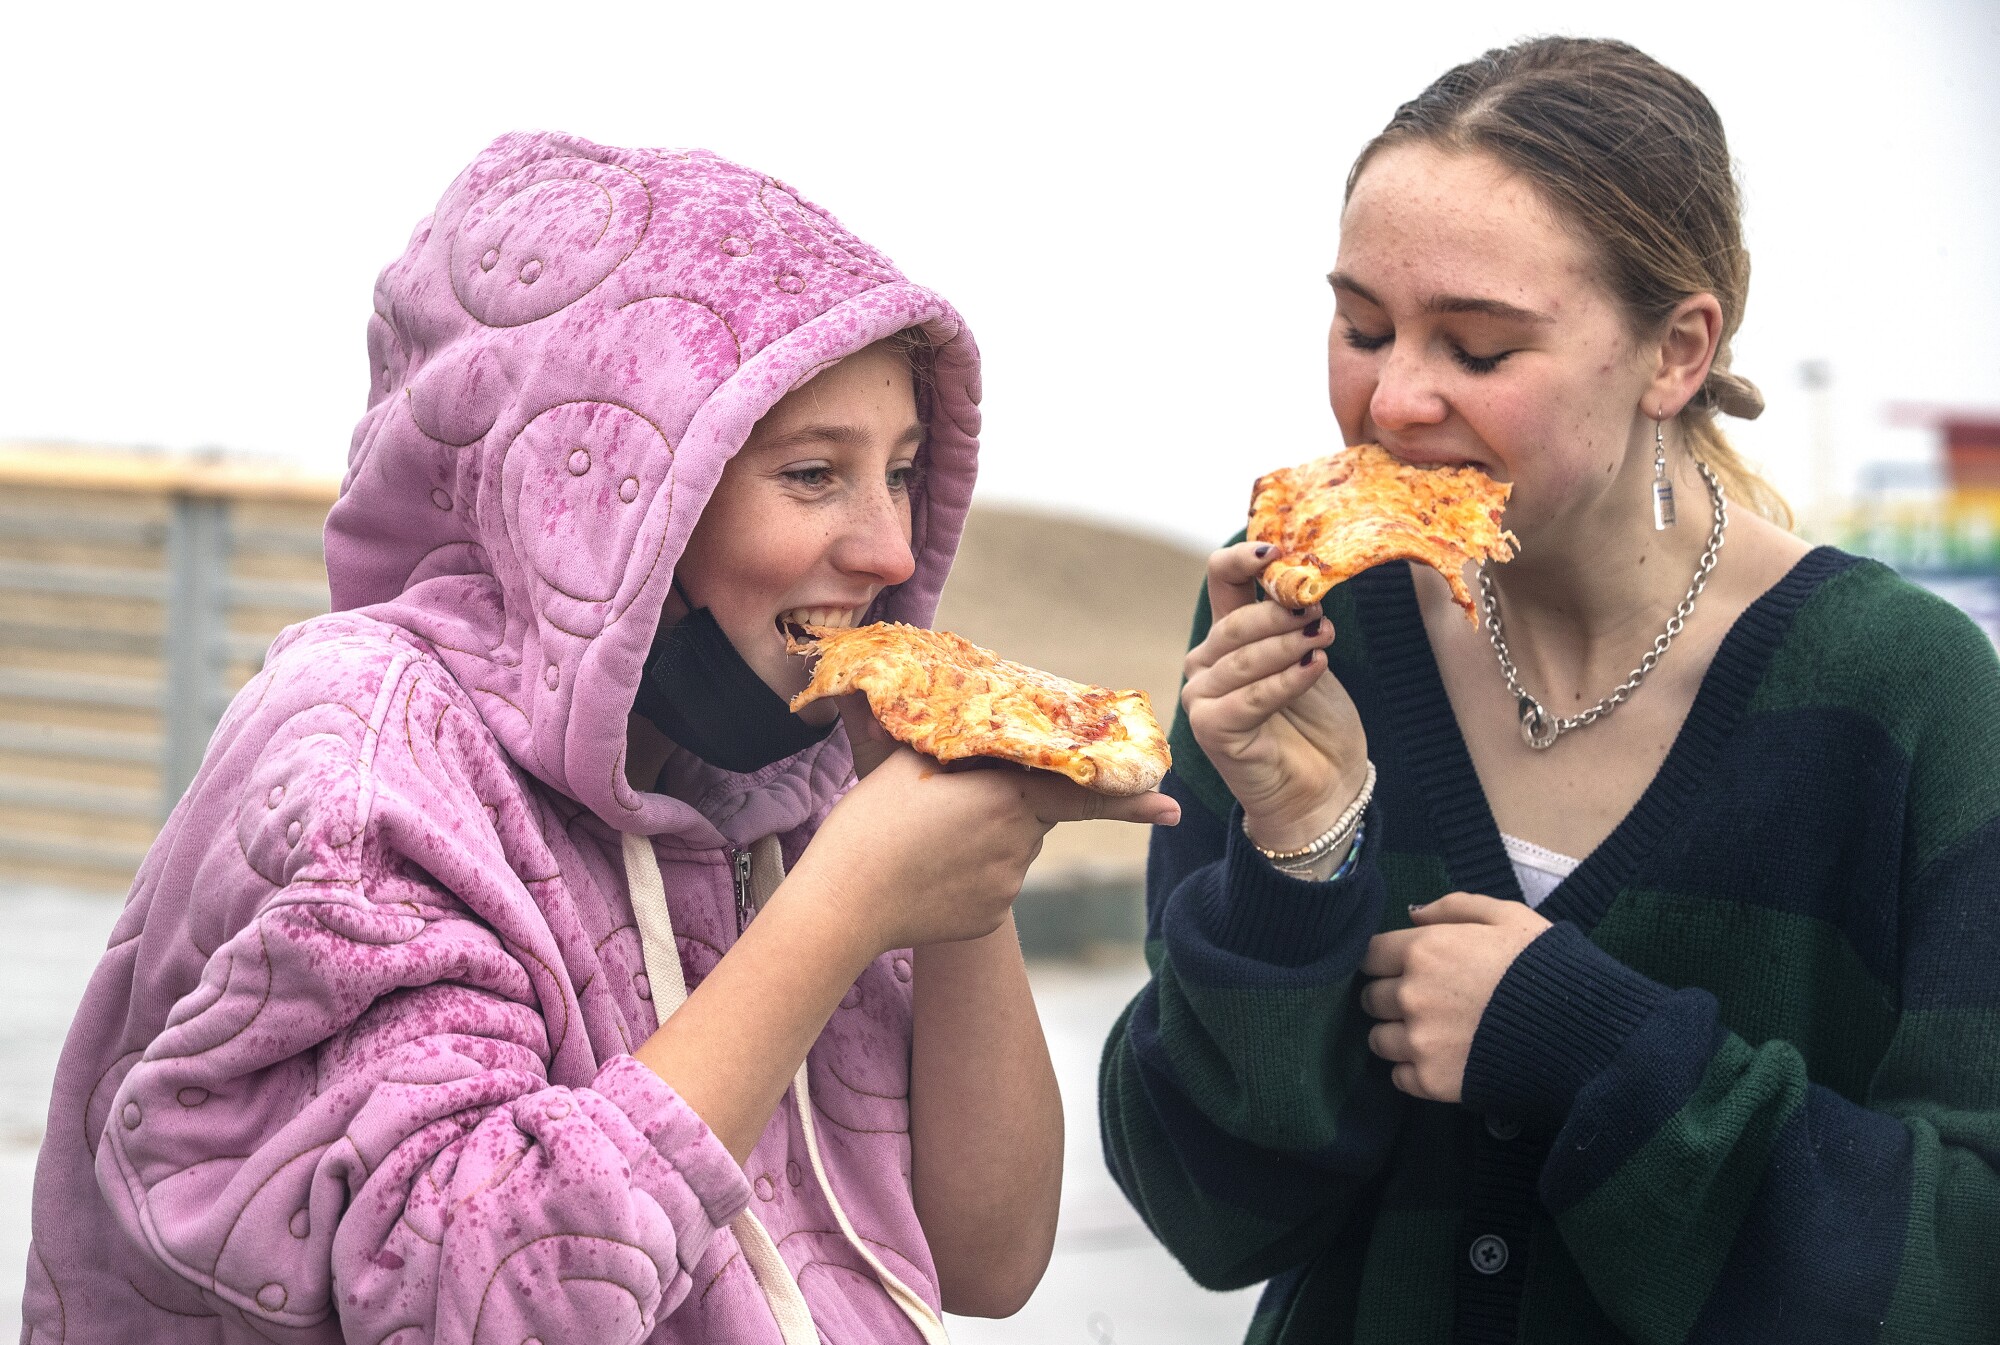 لیلی اسمیت، سمت چپ، و تیلور سلماس هنگام بازدید از ساحل هرموسا، از یک تکه پیتزا زیر باران لذت می برند.